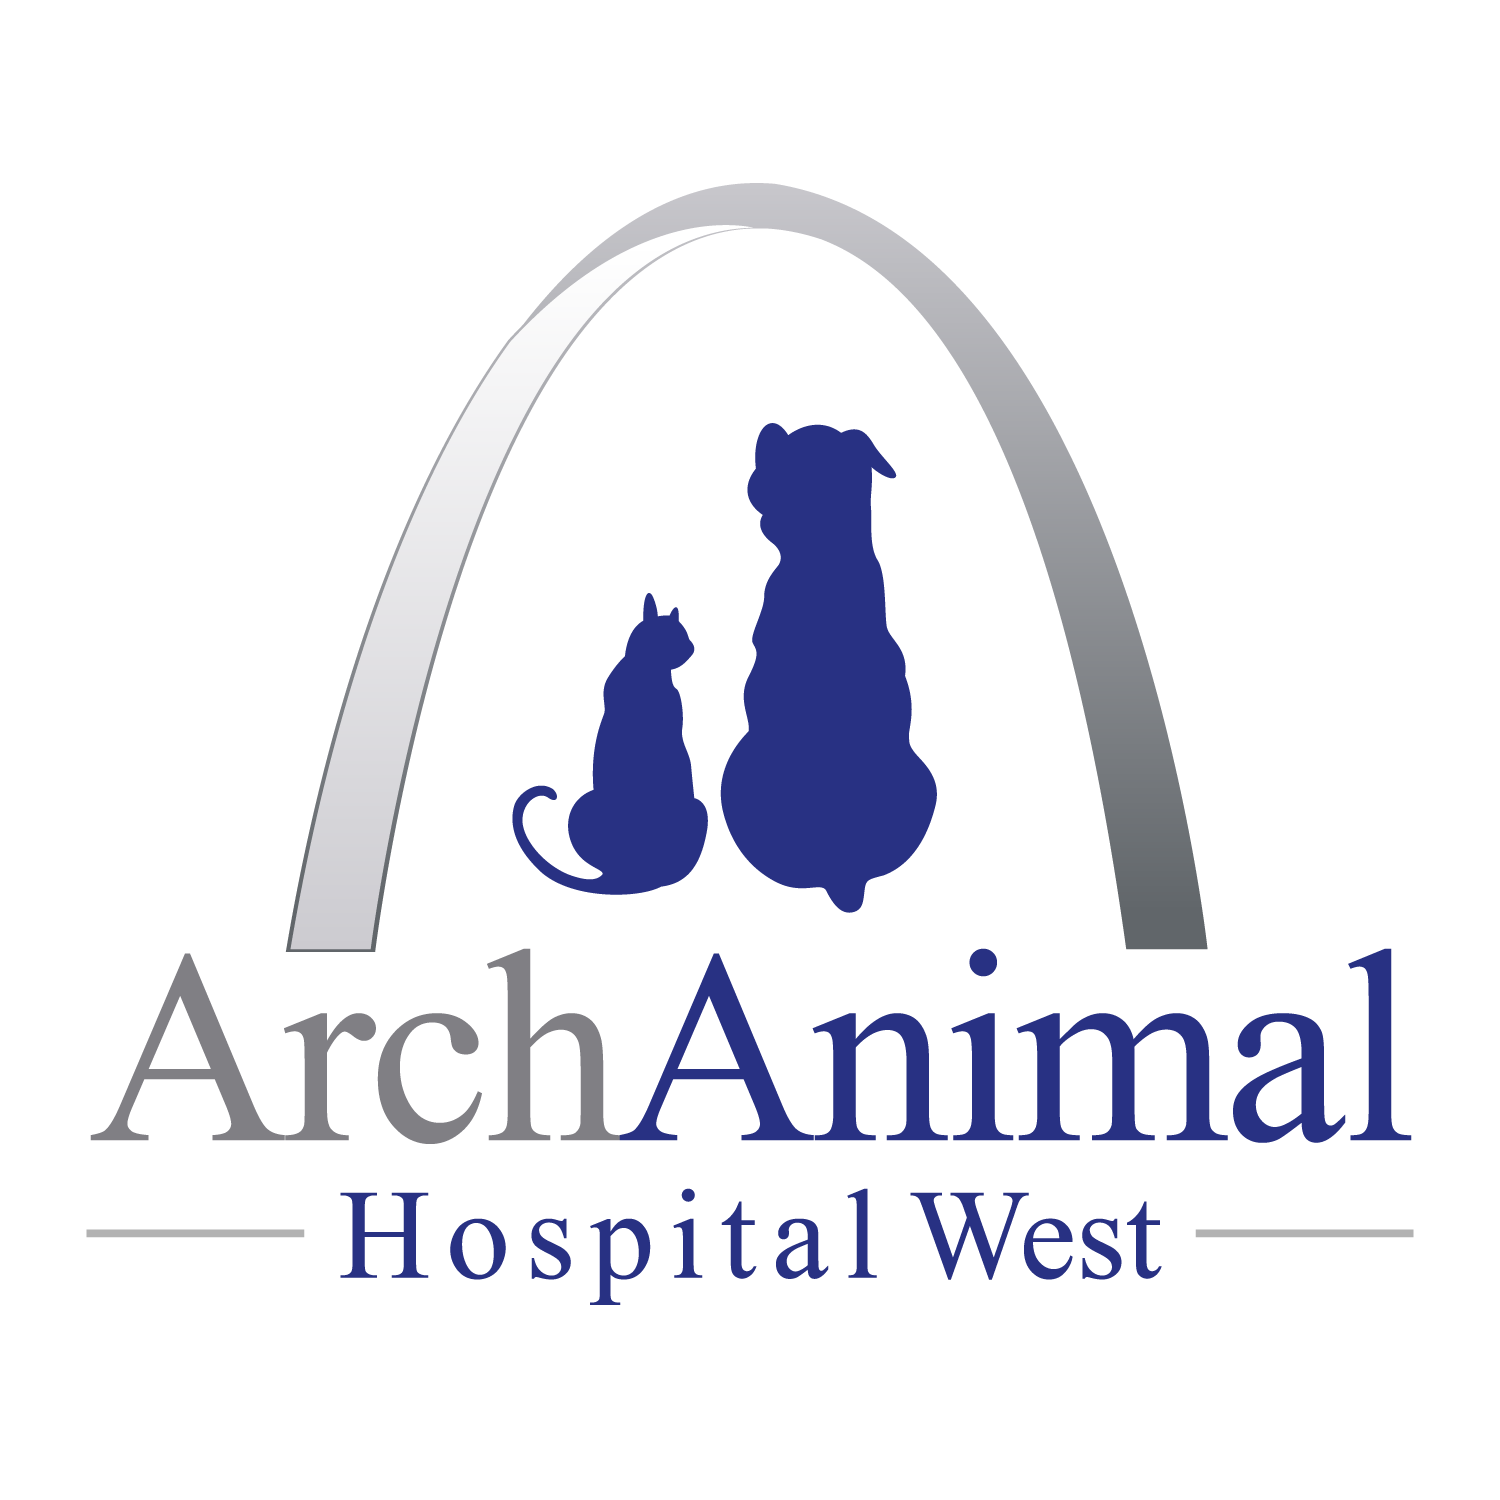 arch animal hospital west logo